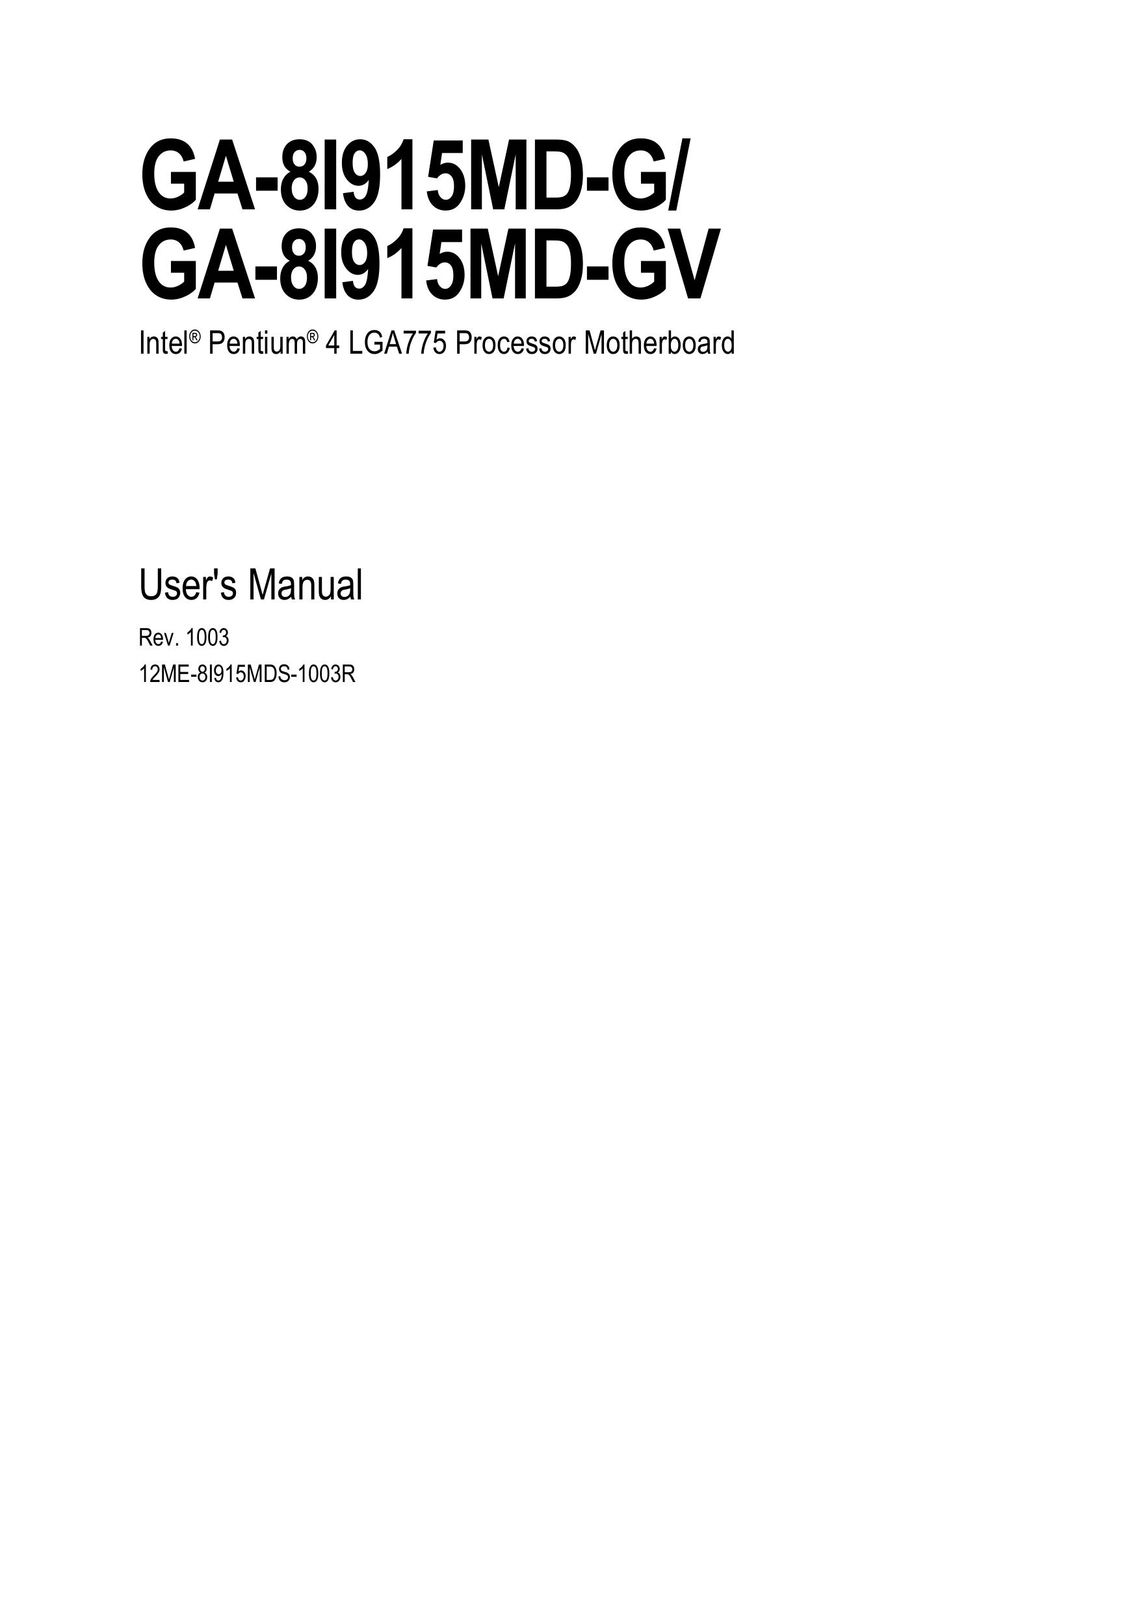 Gigabyte GA-8I915MD-GV Network Card User Manual